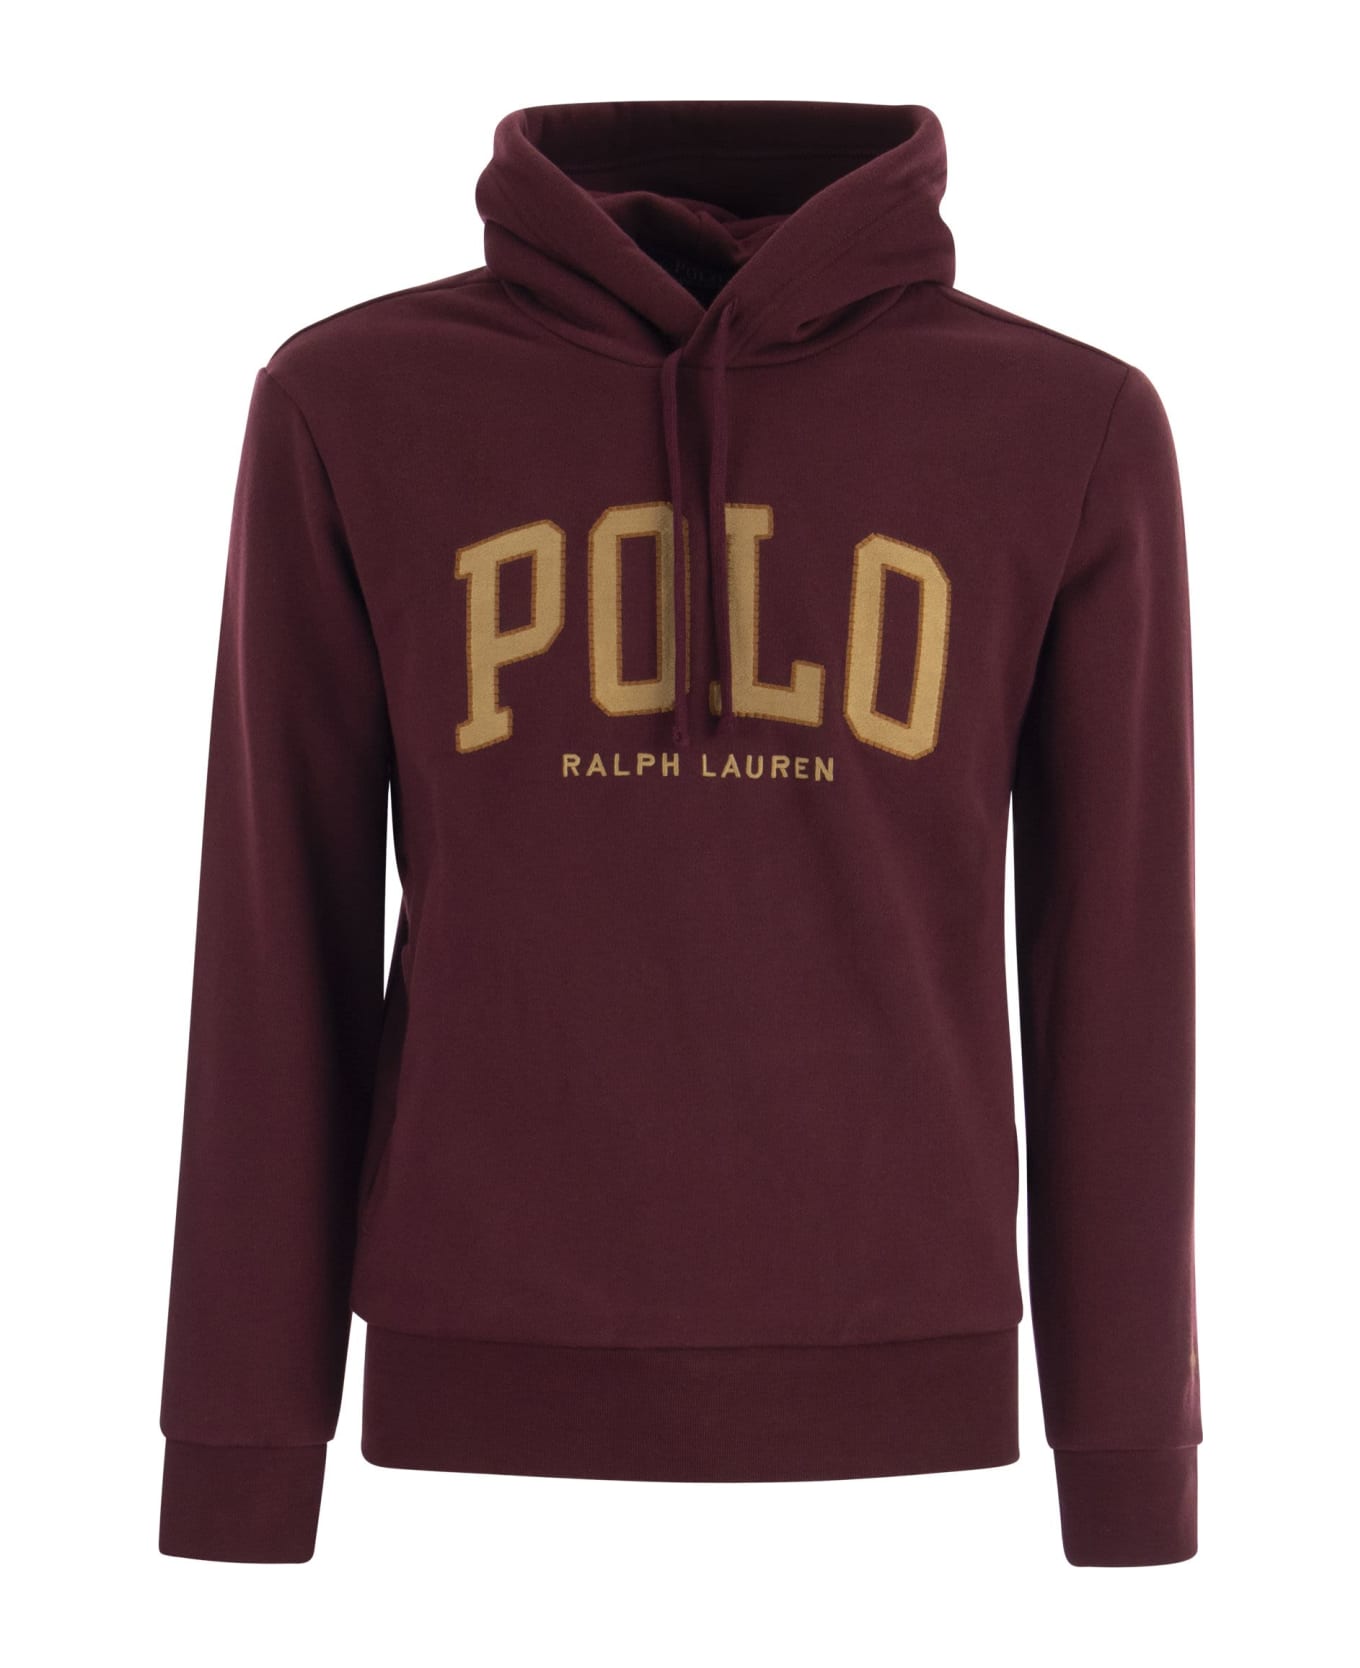 Polo Ralph Lauren Rl Sweatshirt With Hood And Logo - Bordeaux